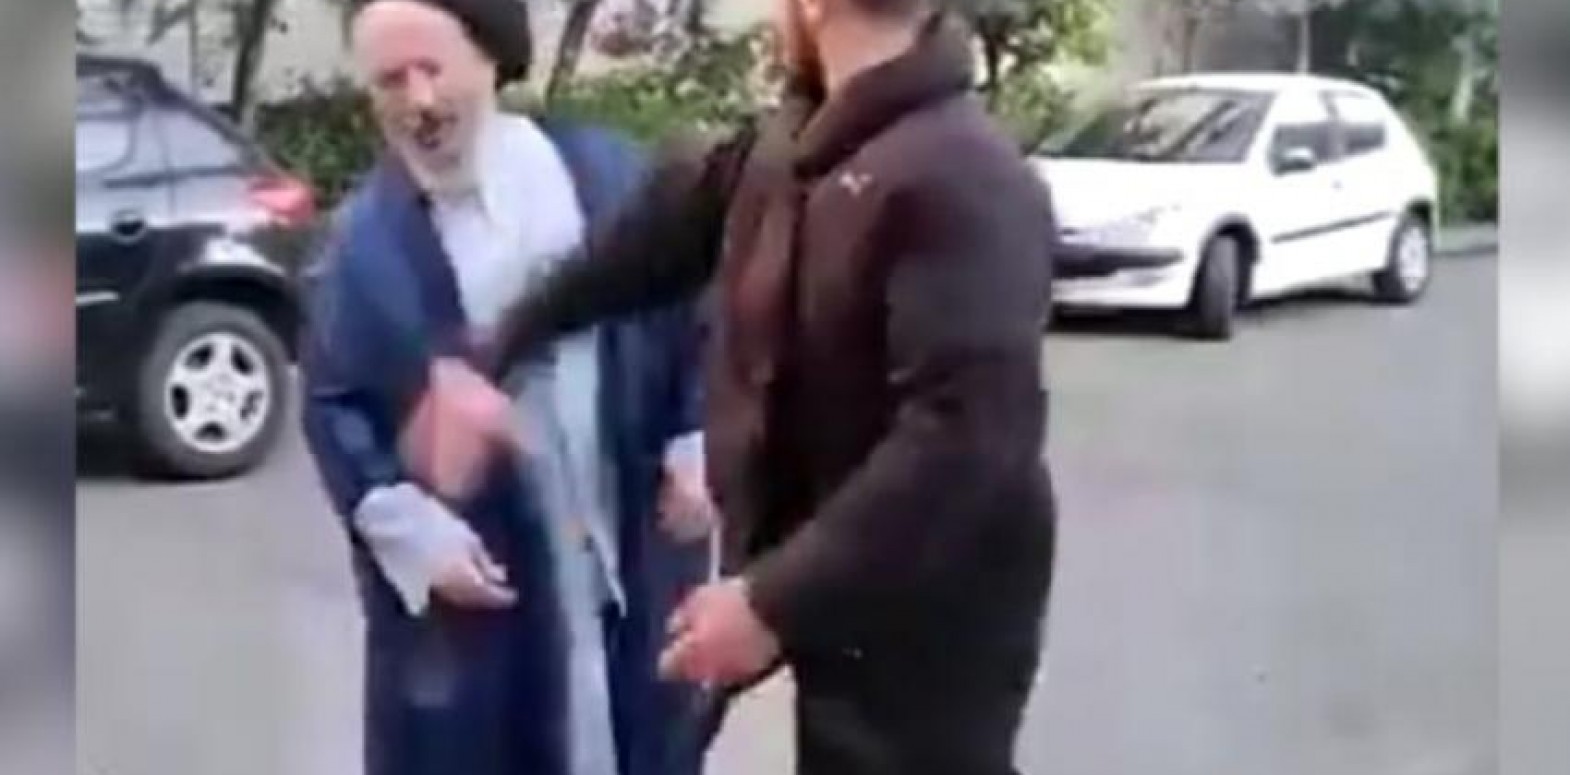 فيديو ضرب شاب لرجل دين معمّم لا علاقة بالاحتجاجات الشعبية الأخيرة في إيران